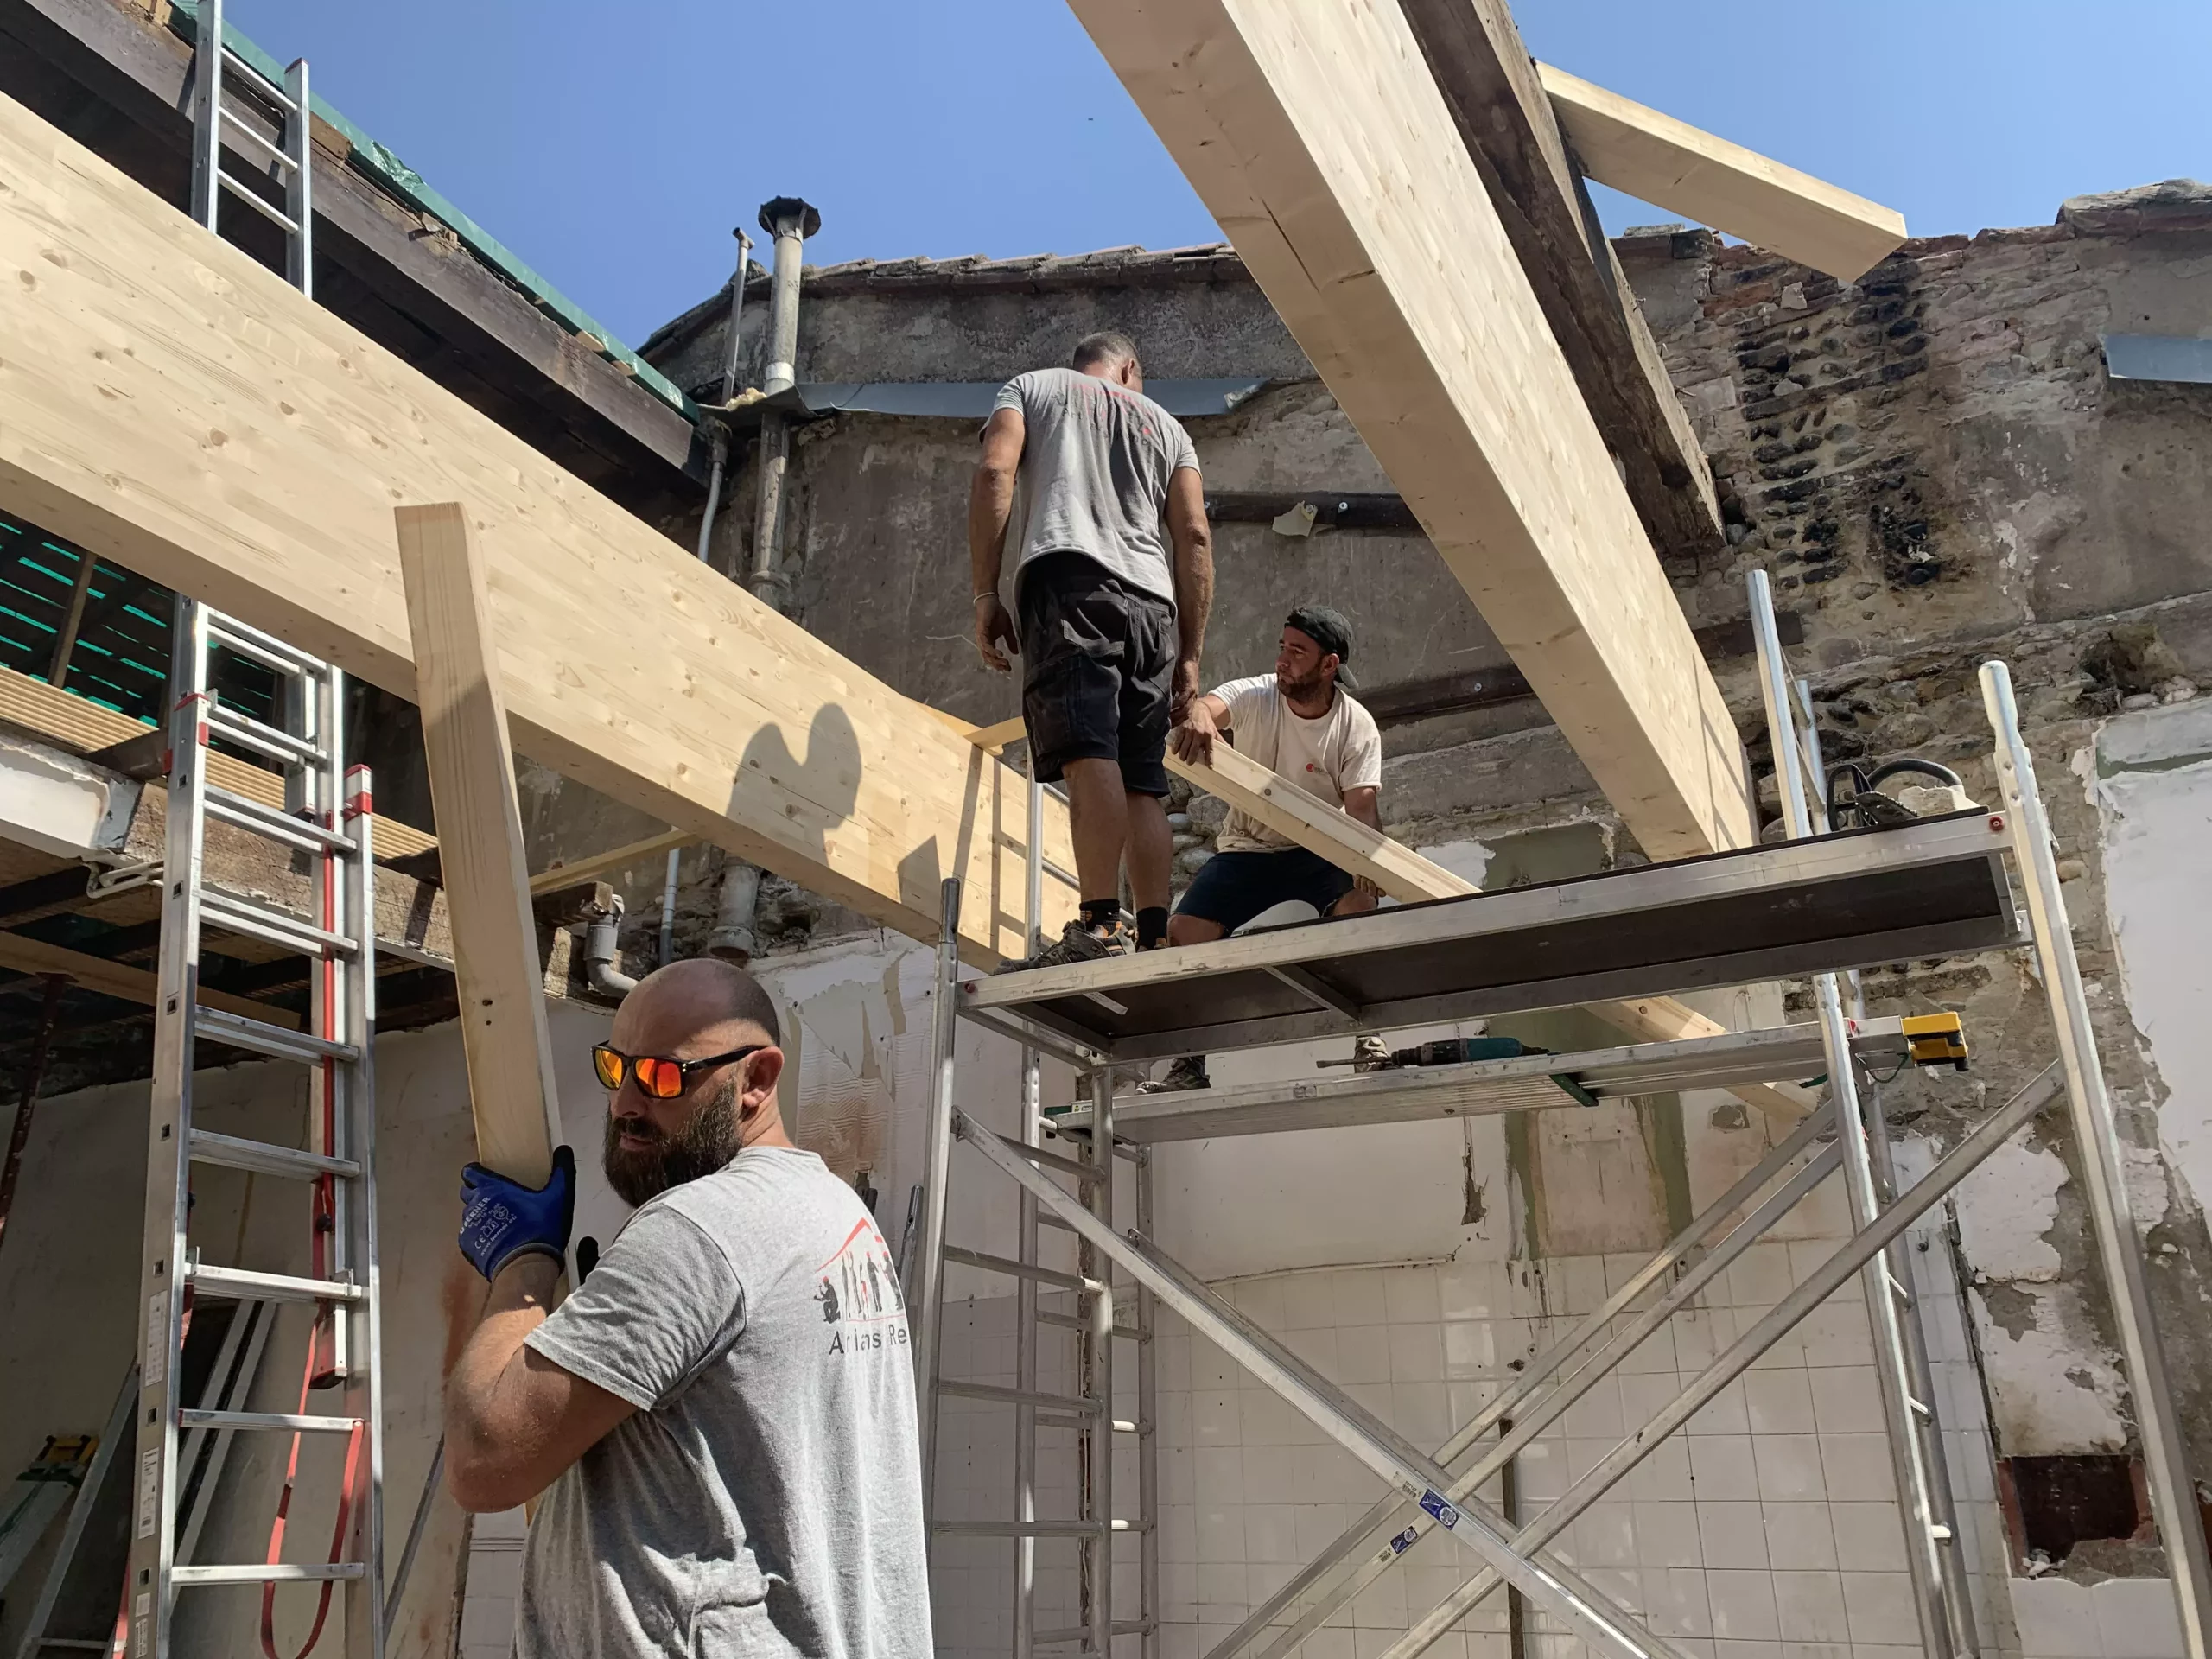 rénovation de toiture, une équipe de professionnels Artisans Réno à votre service